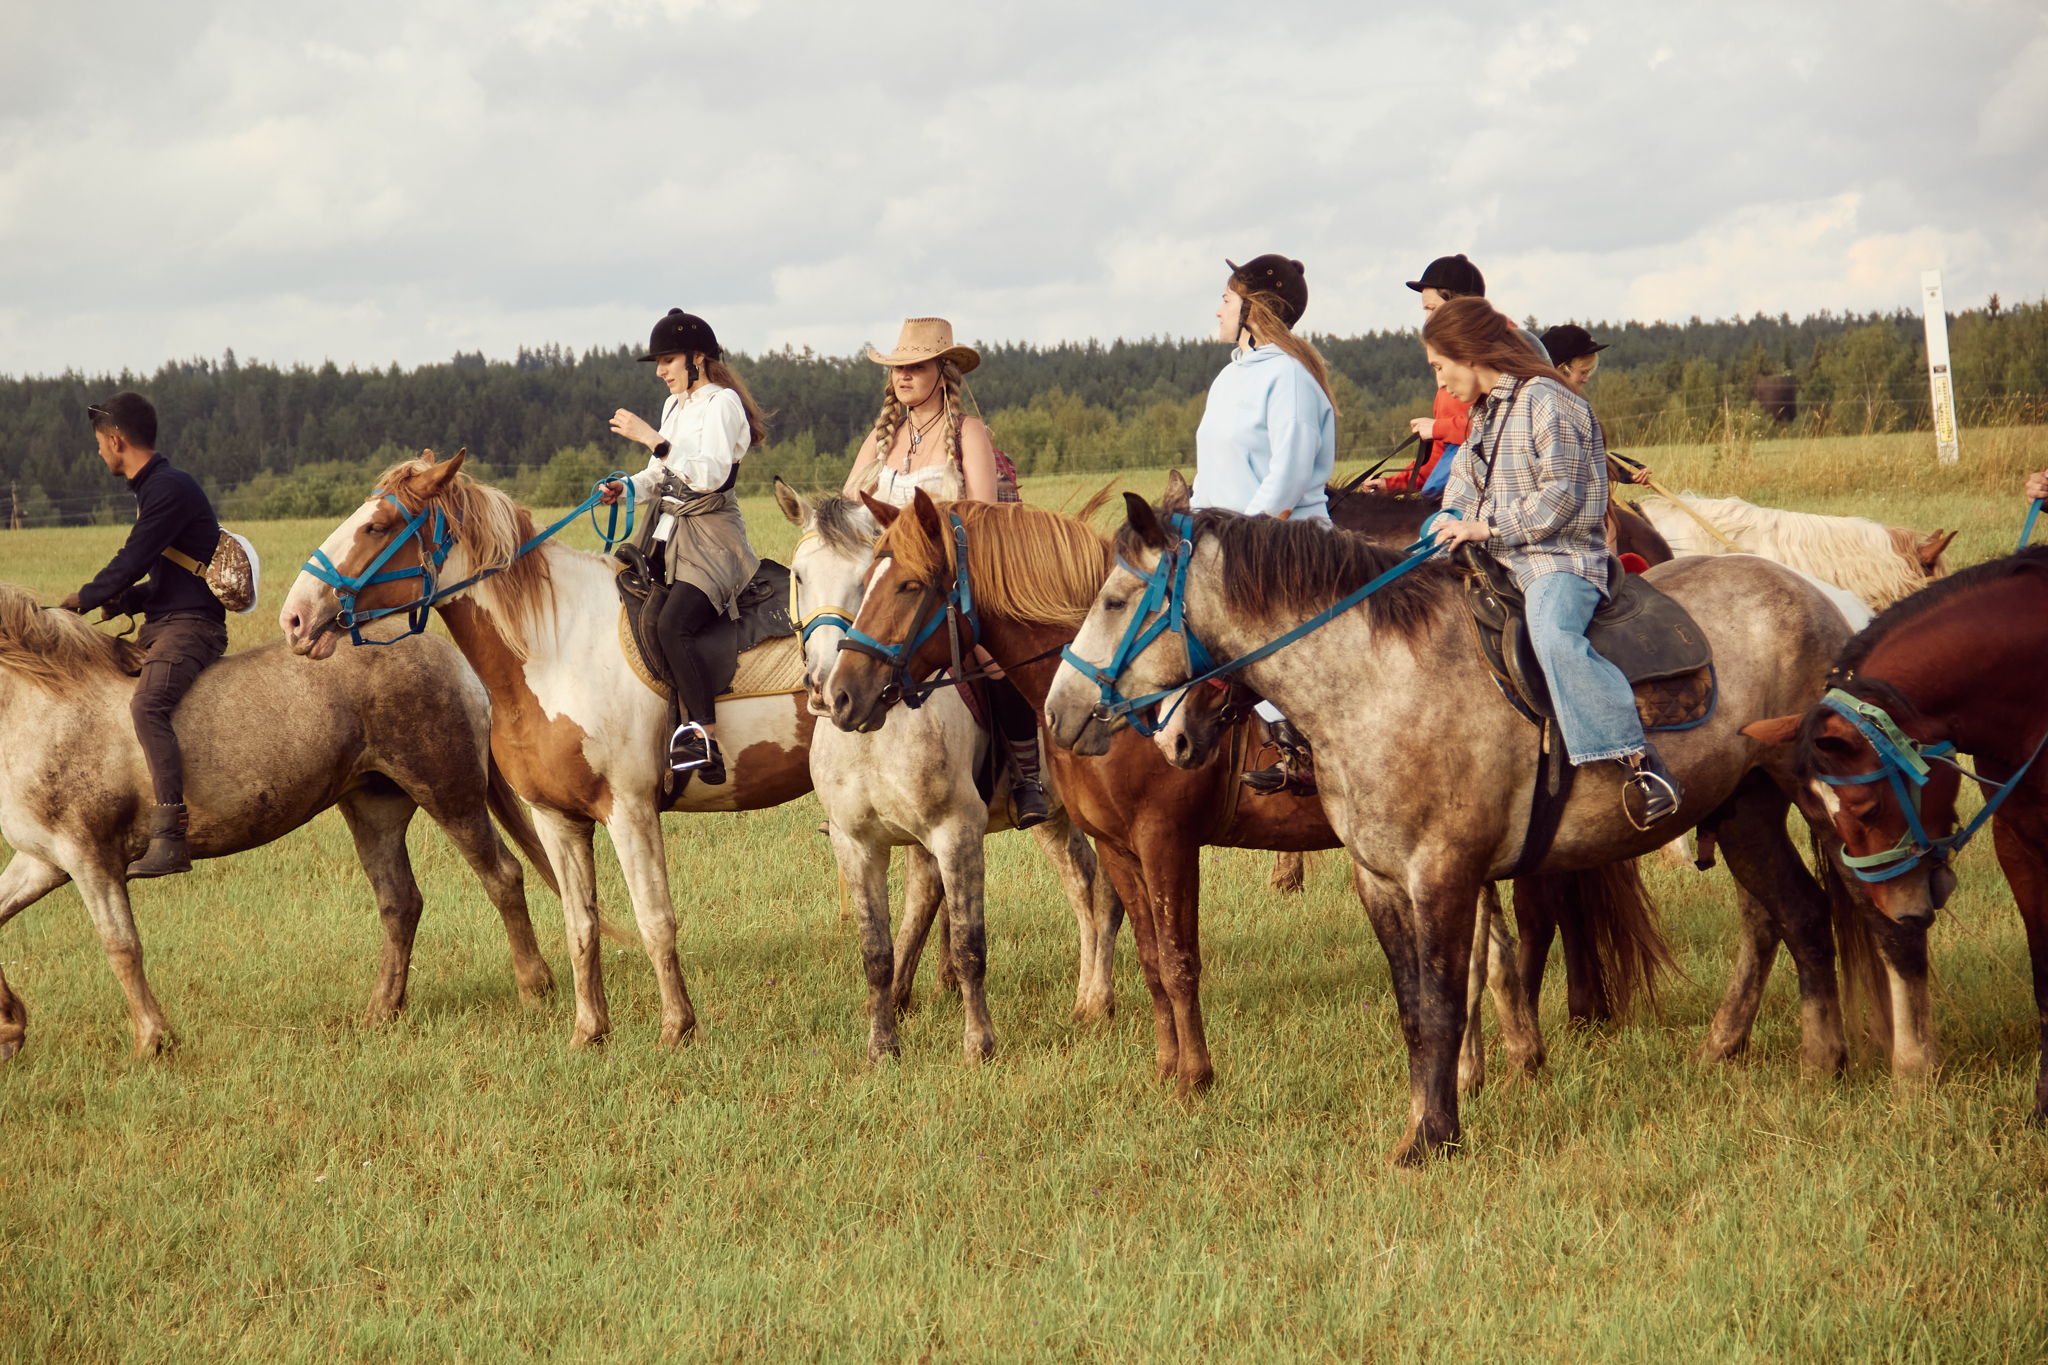 НОЧНОЕ Western | КОЛОМНА конный поход в стиле Western. 13-14 июля